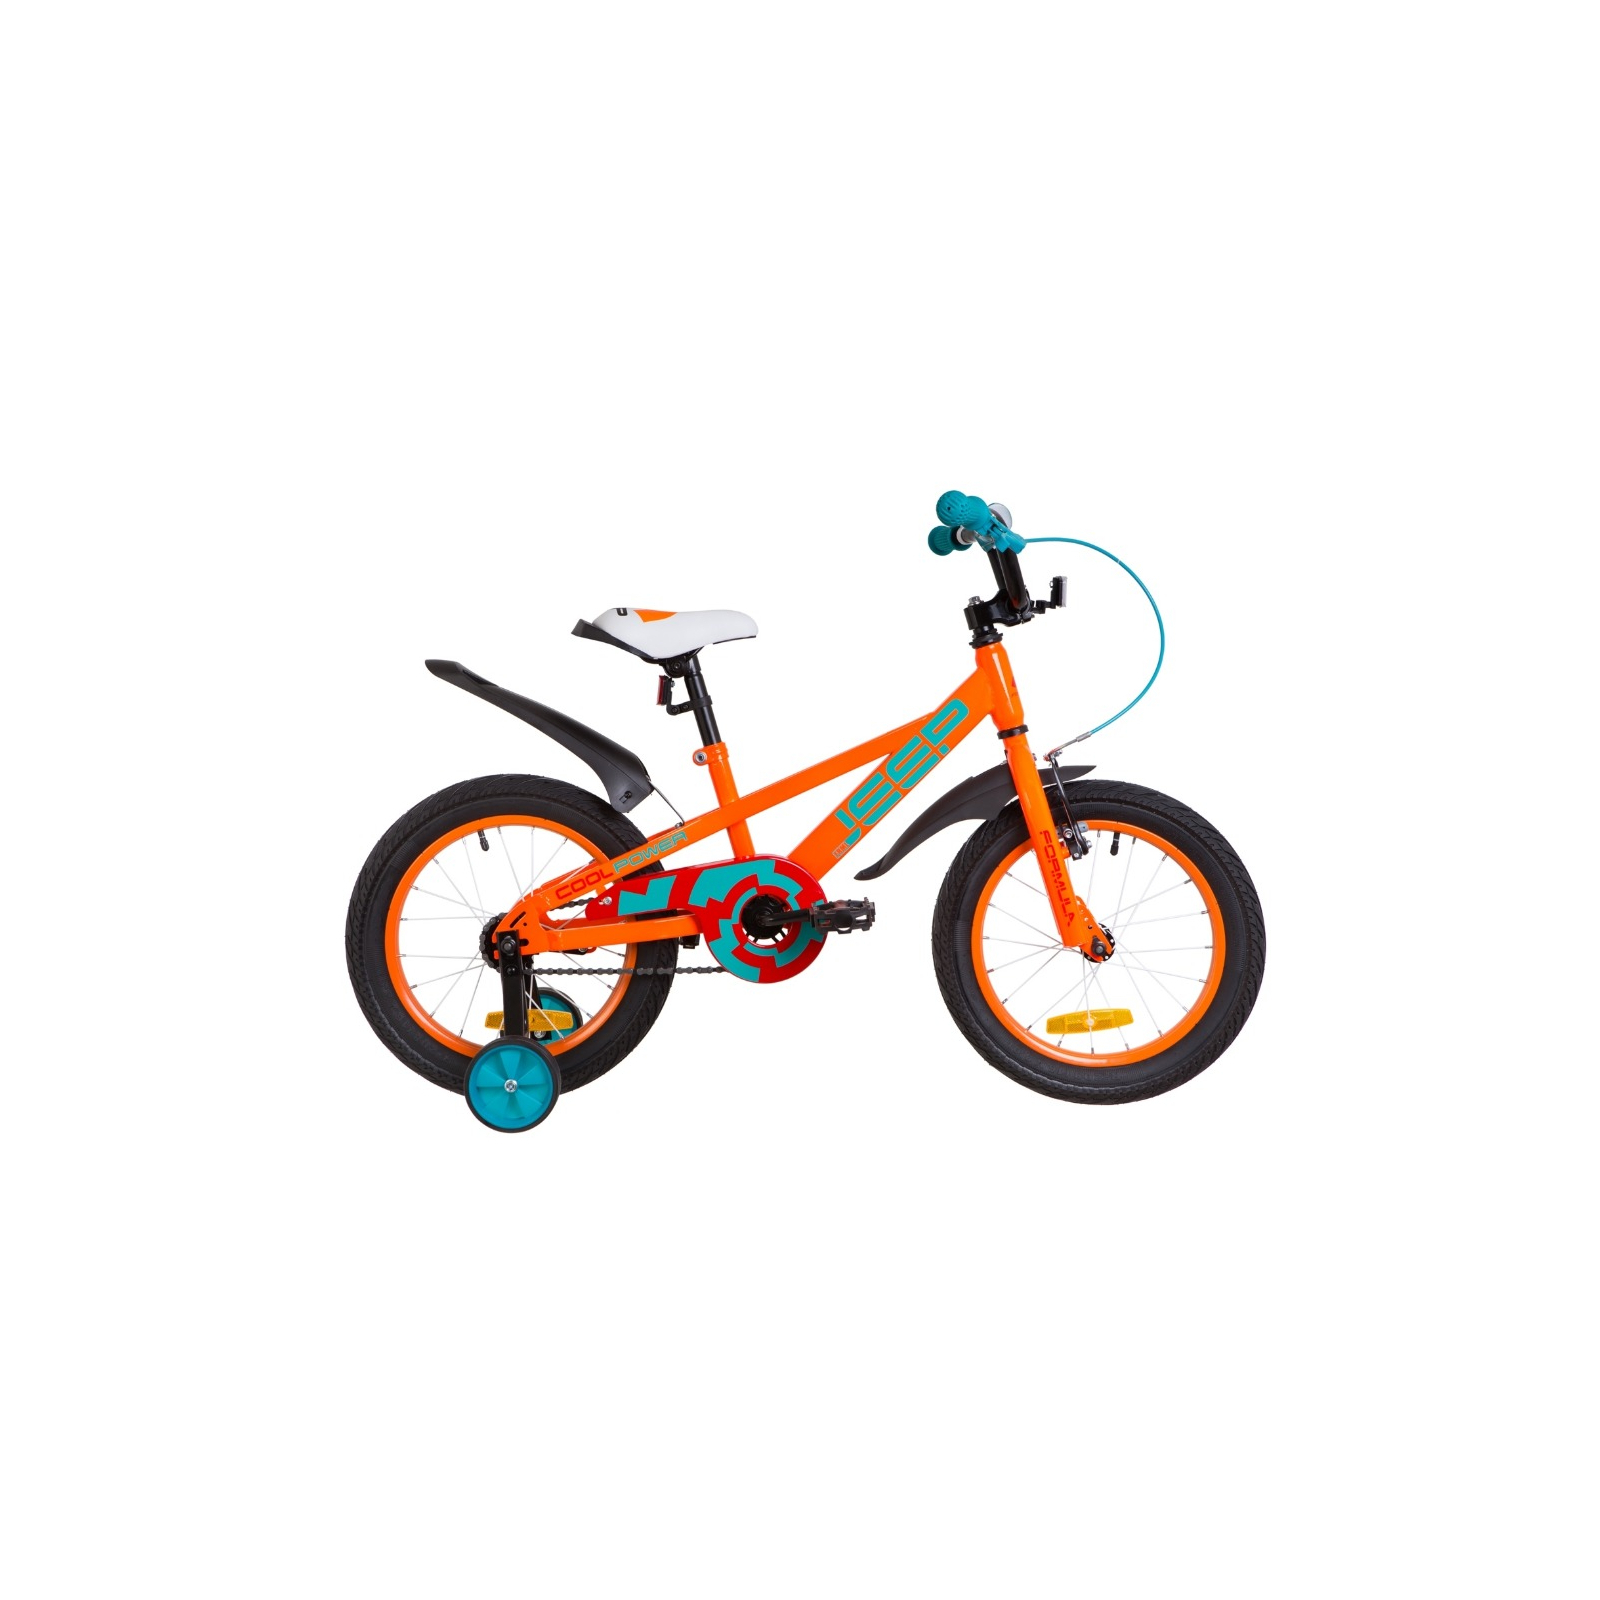 Дитячий велосипед Formula 16" JEEP рама-8,5" 2019 оранжево-бирюзовый (OPS-FRK-16-068)